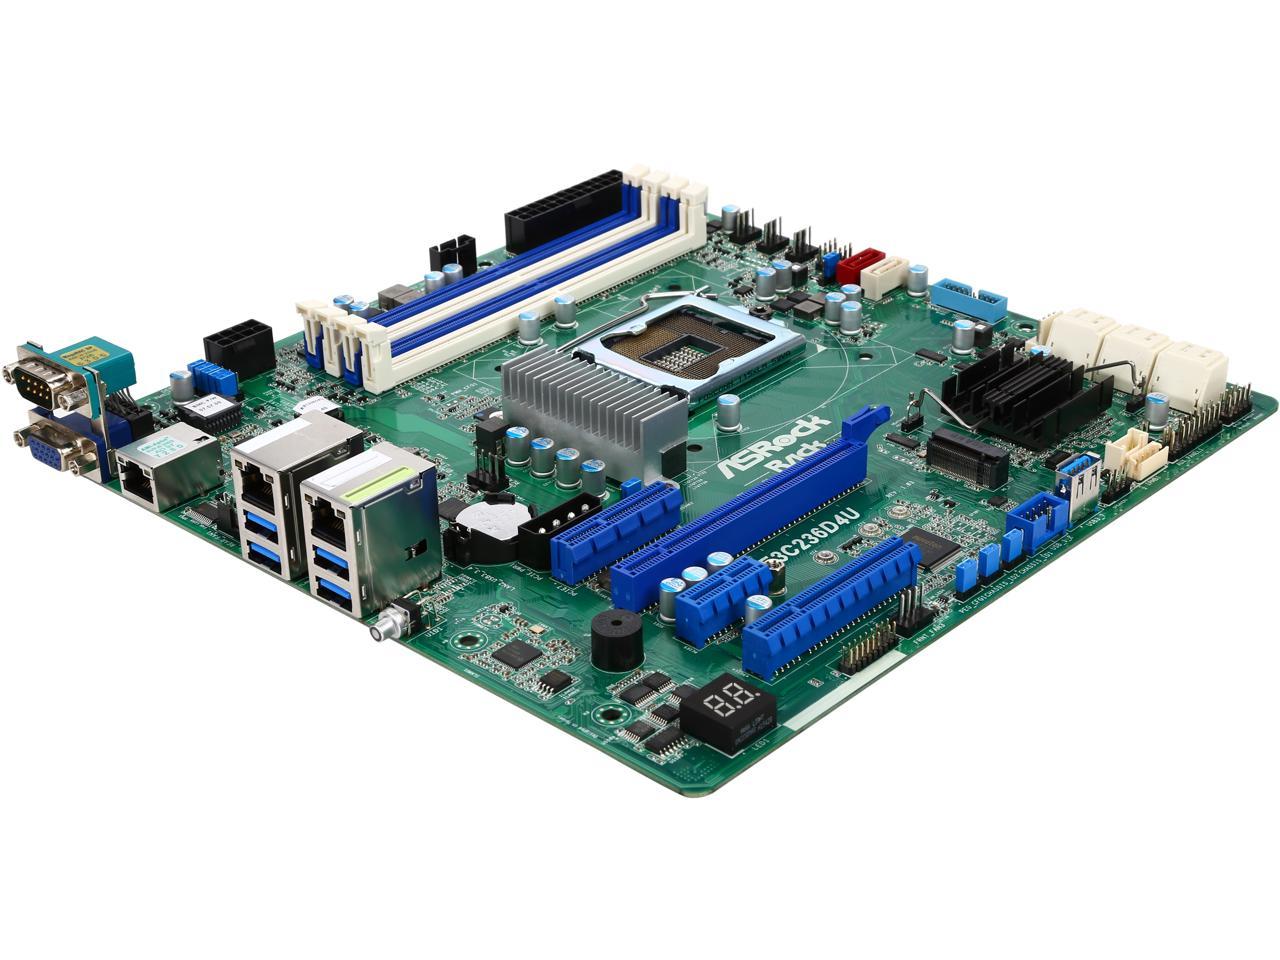 ASRock E3C236D4U Micro ATX Server Motherboard LGA1151 Intel C236